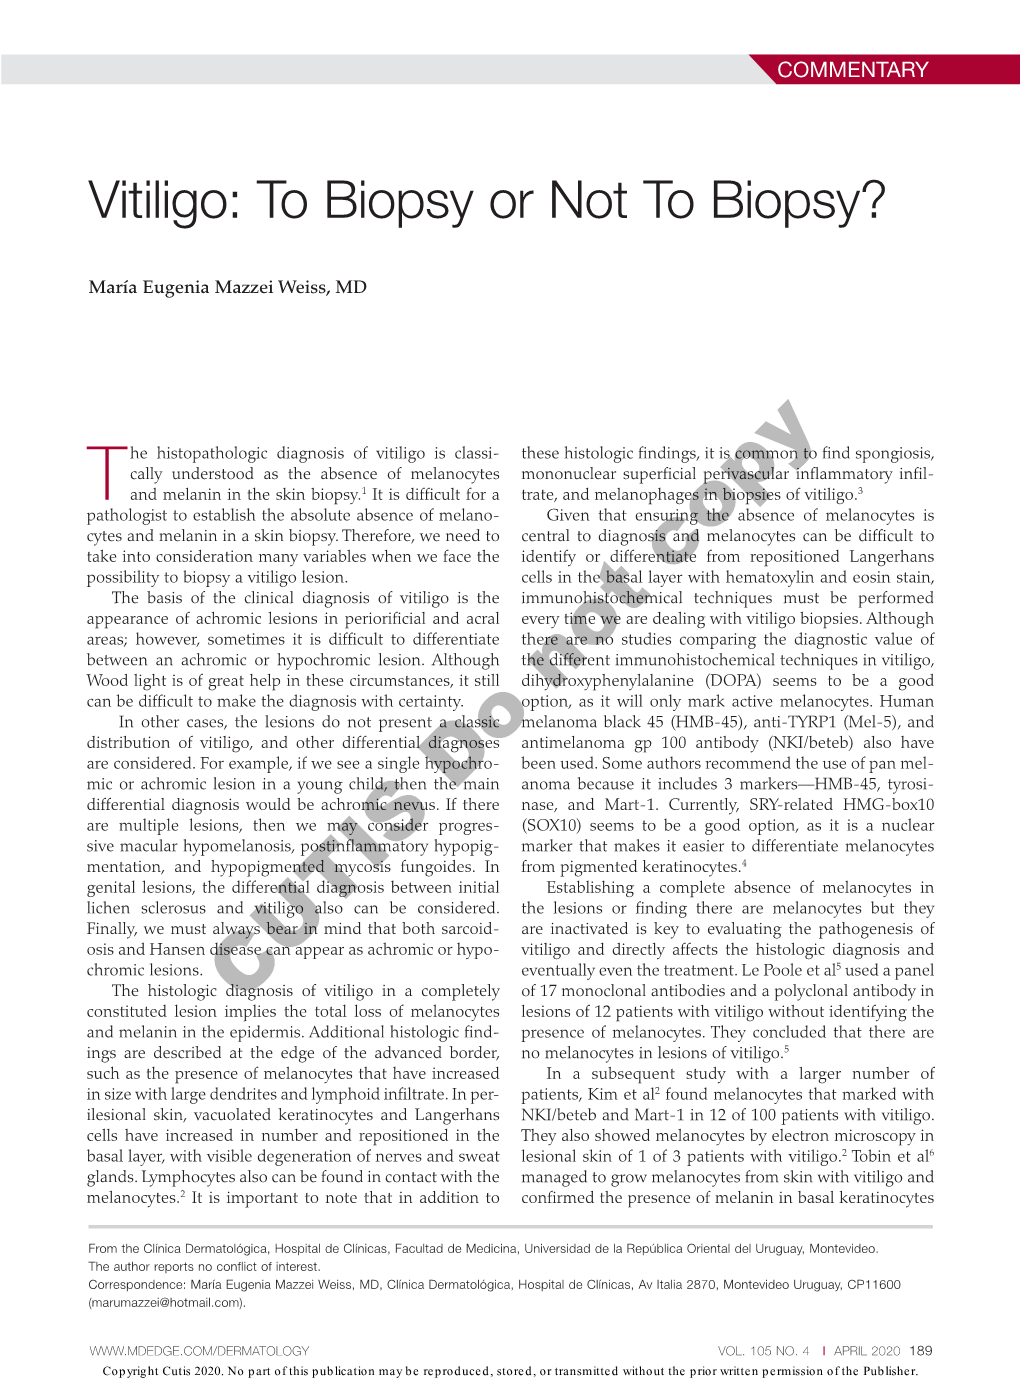 Vitiligo: to Biopsy Or Not to Biopsy?